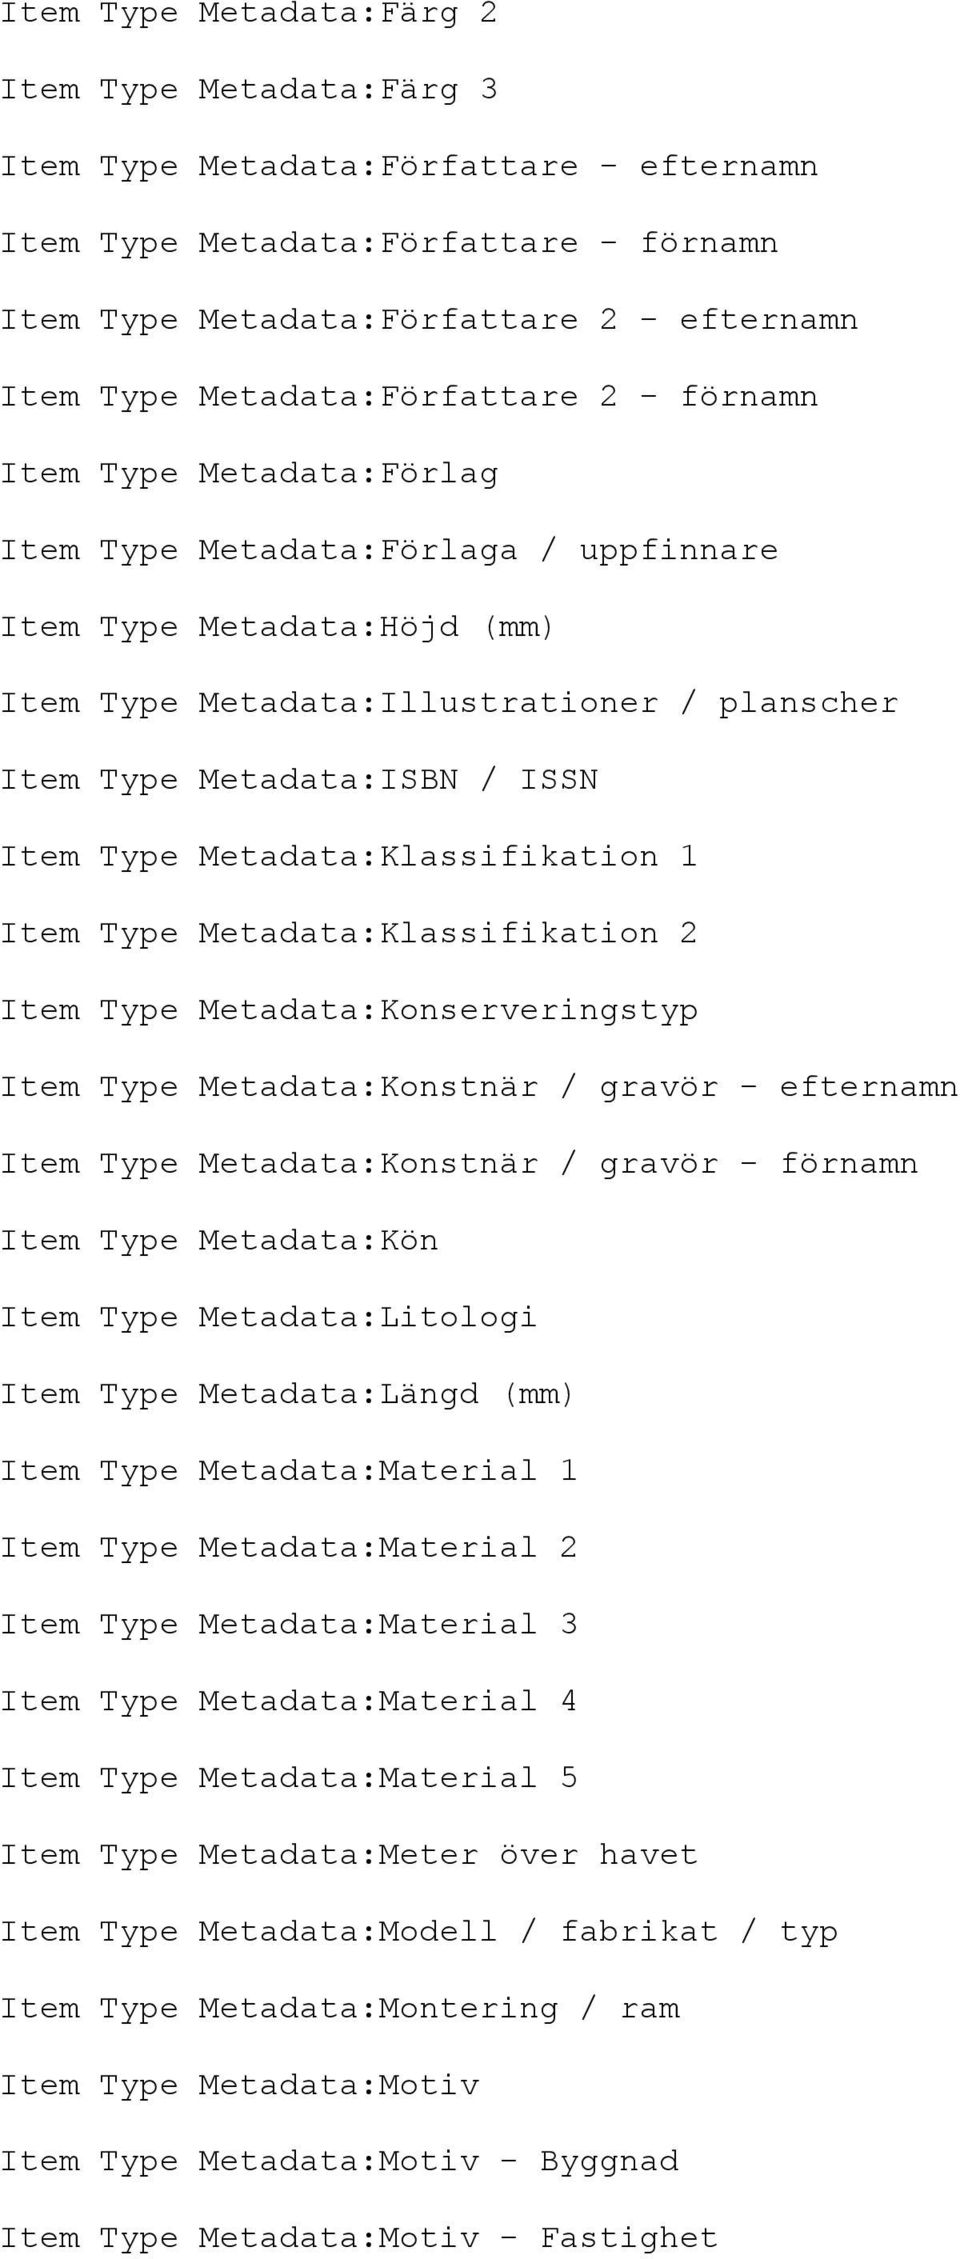 ISSN Item Type Metadata:Klassifikation 1 Item Type Metadata:Klassifikation 2 Item Type Metadata:Konserveringstyp Item Type Metadata:Konstnär / gravör - efternamn Item Type Metadata:Konstnär / gravör